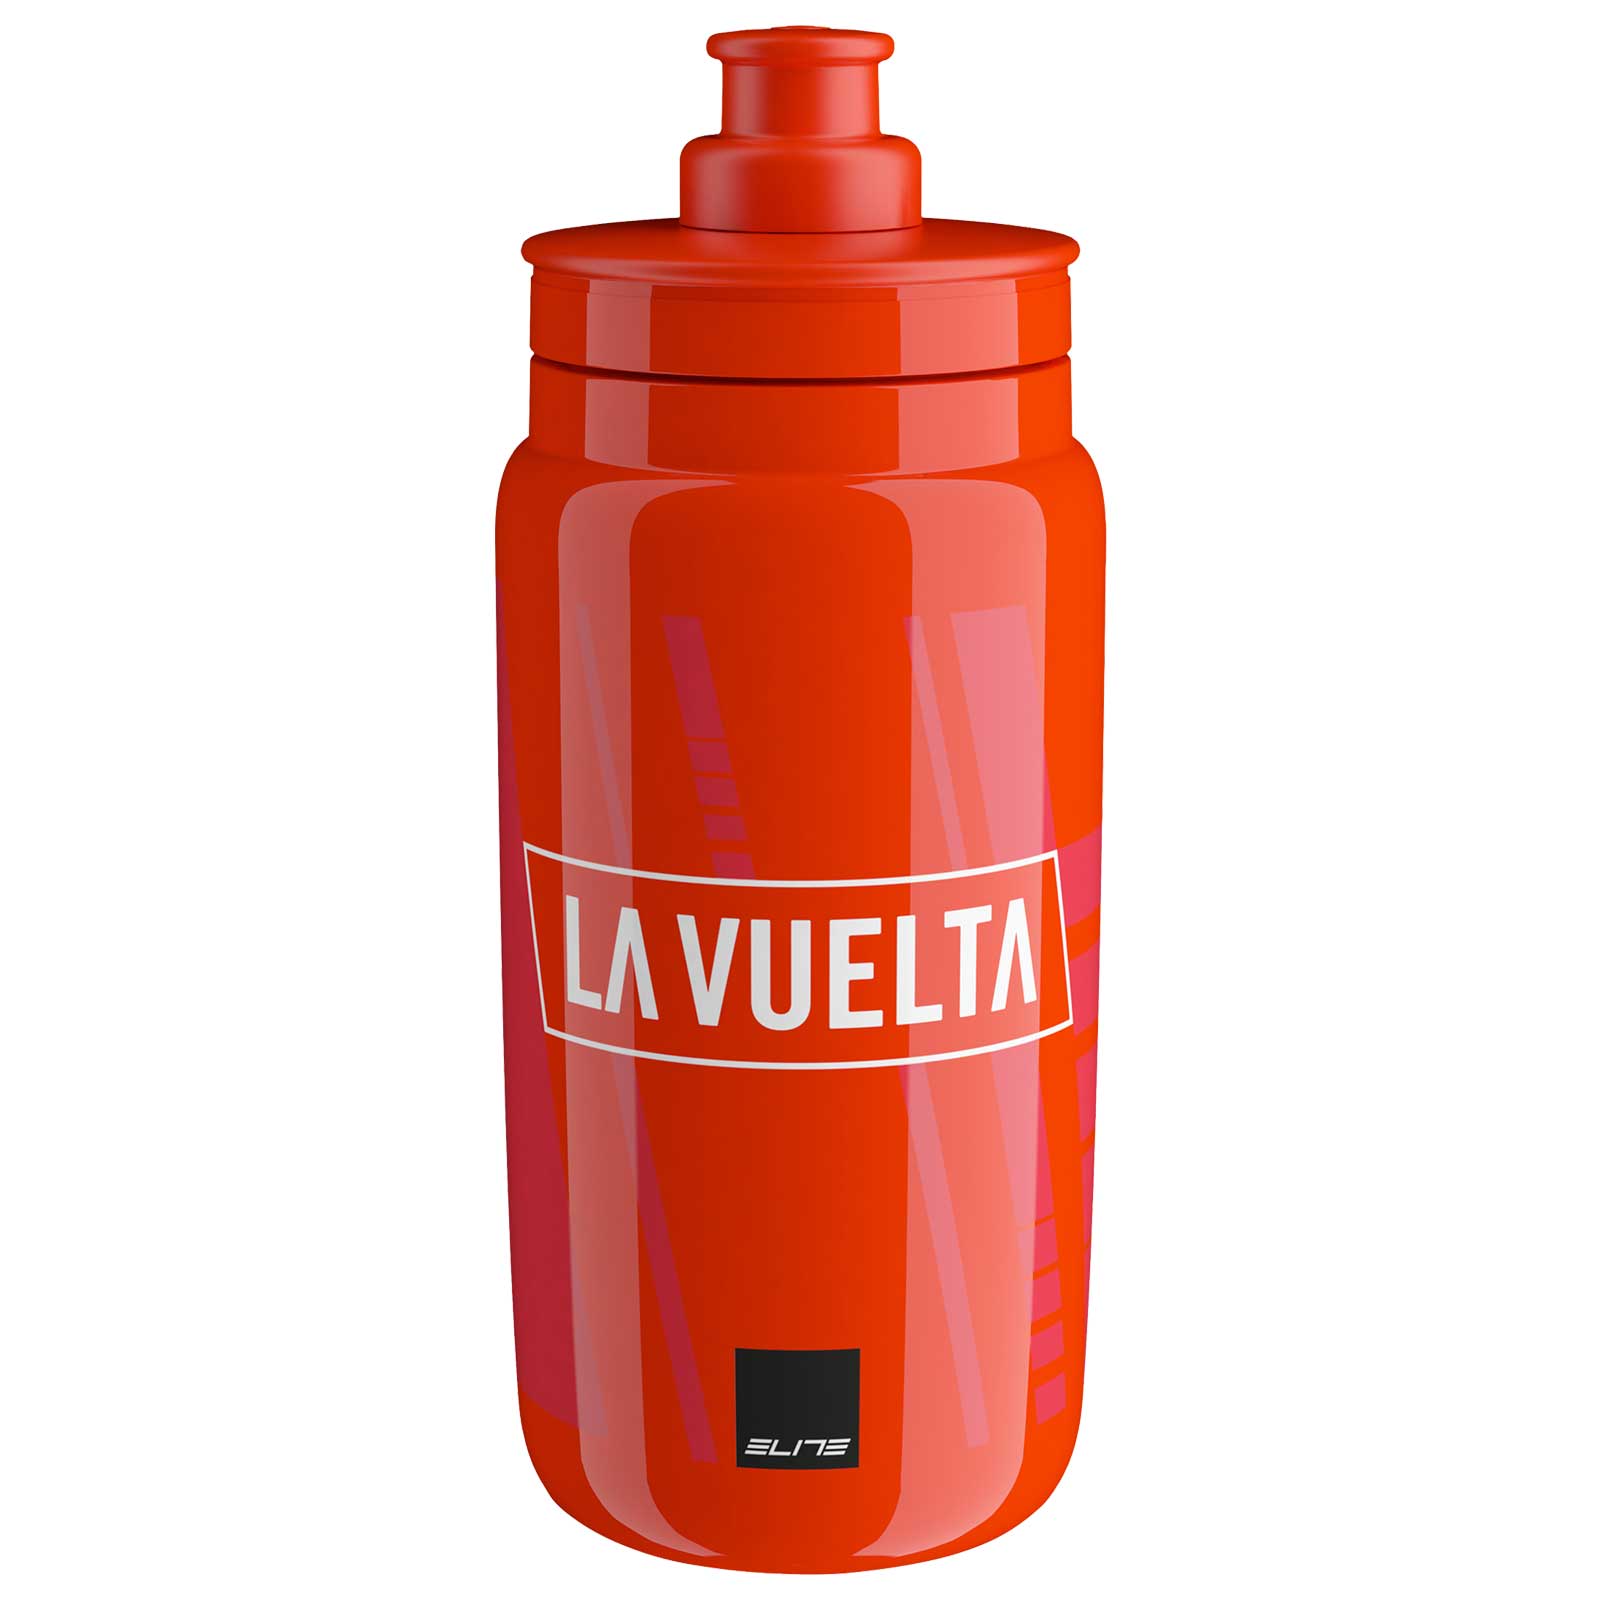 Produktbild von Elite Fly Vuelta Trinkflasche - 550ml - rot